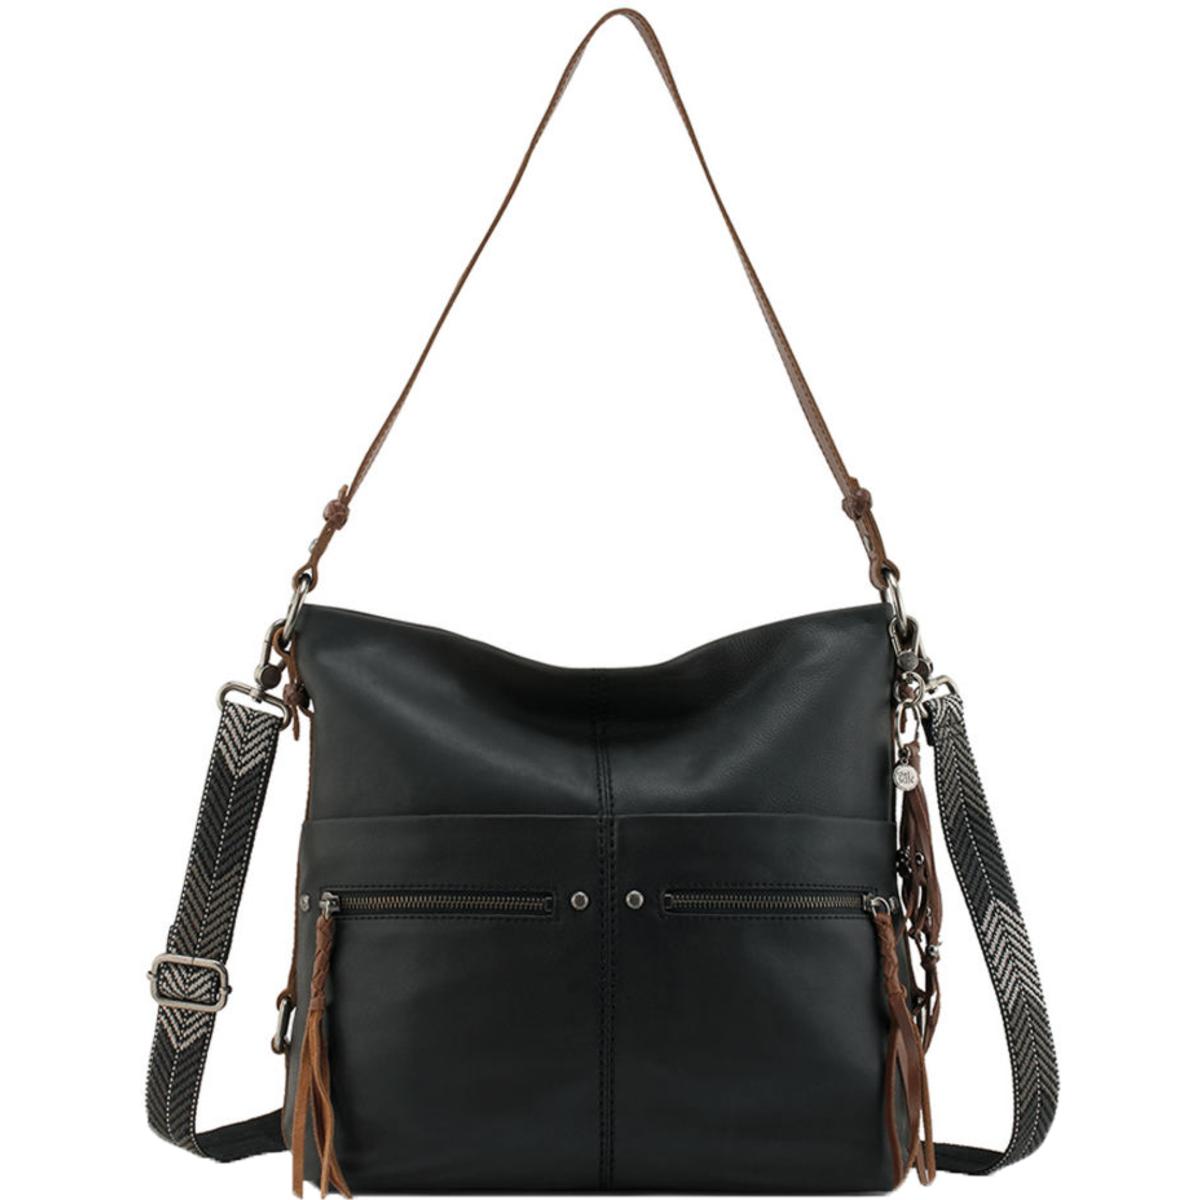 The Sak Womens Ashland Black Leather Bucket Hobo Handbag Purse Large ...